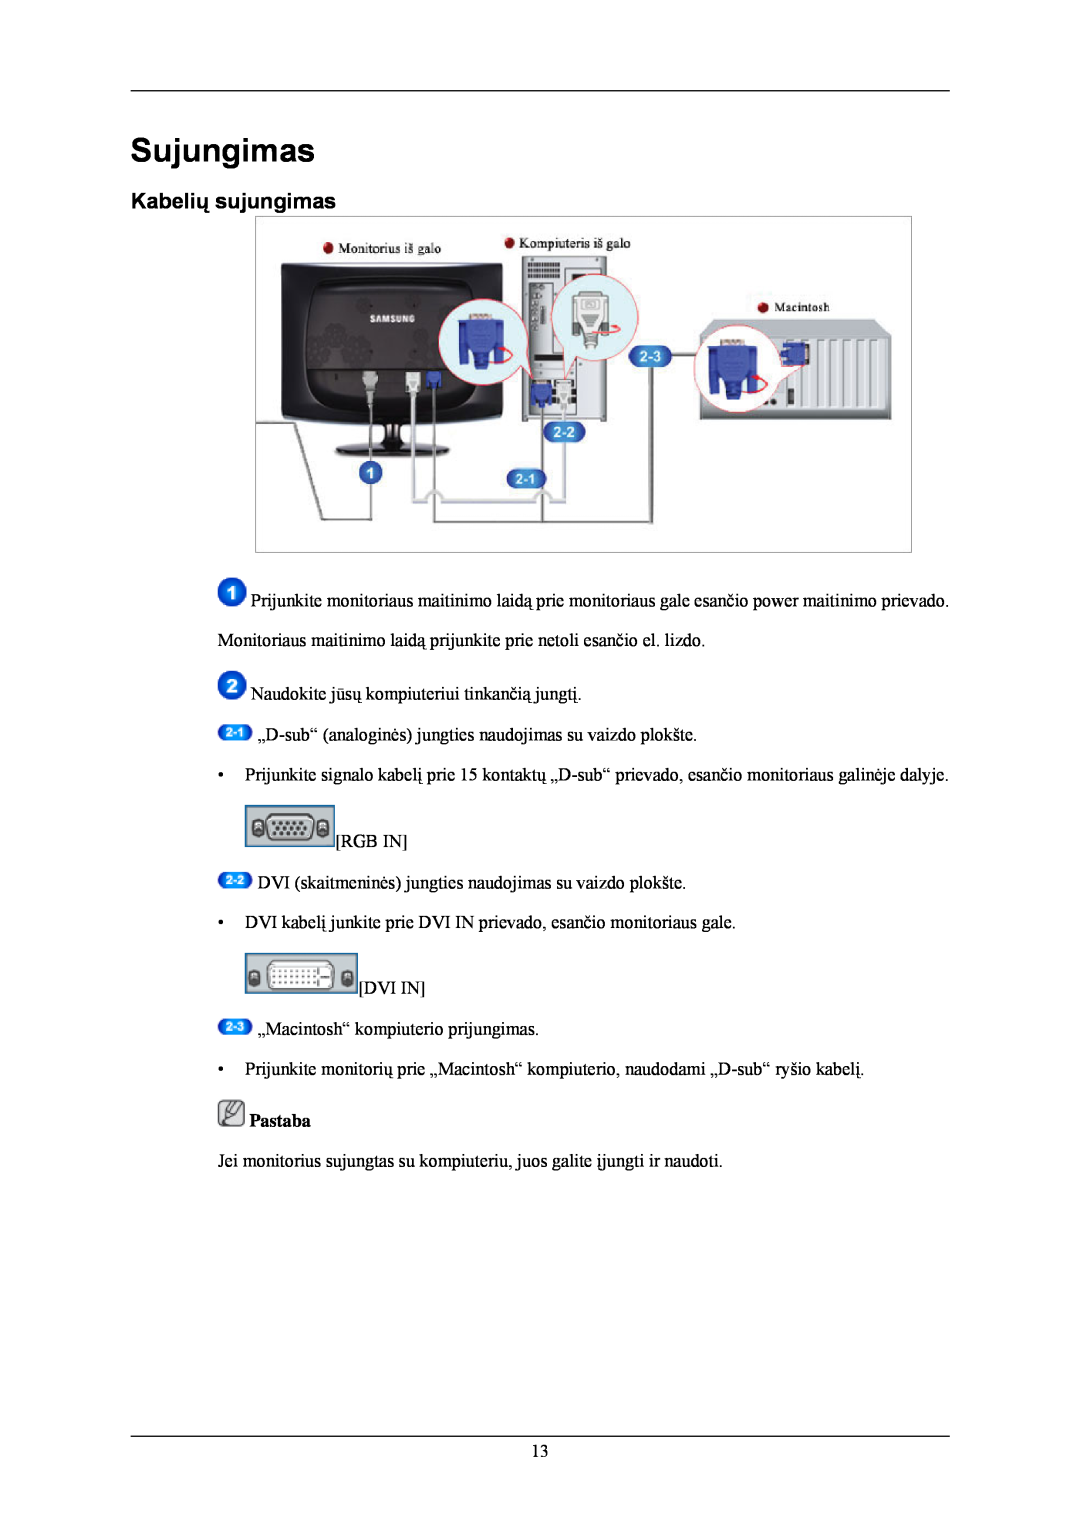 Samsung LS24CMKKFV/EN manual Sujungimas, Kabelių sujungimas 